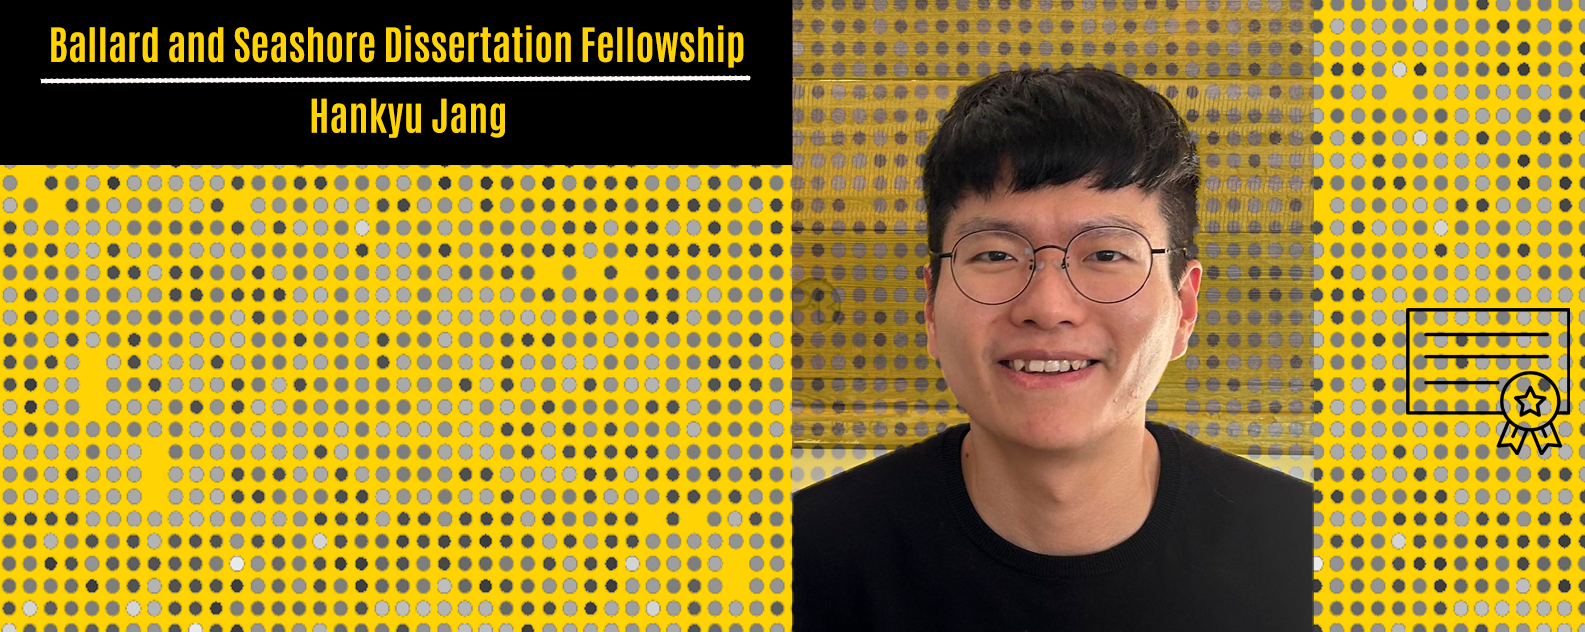 Ballard Fellowship recipient Hankyu Jang